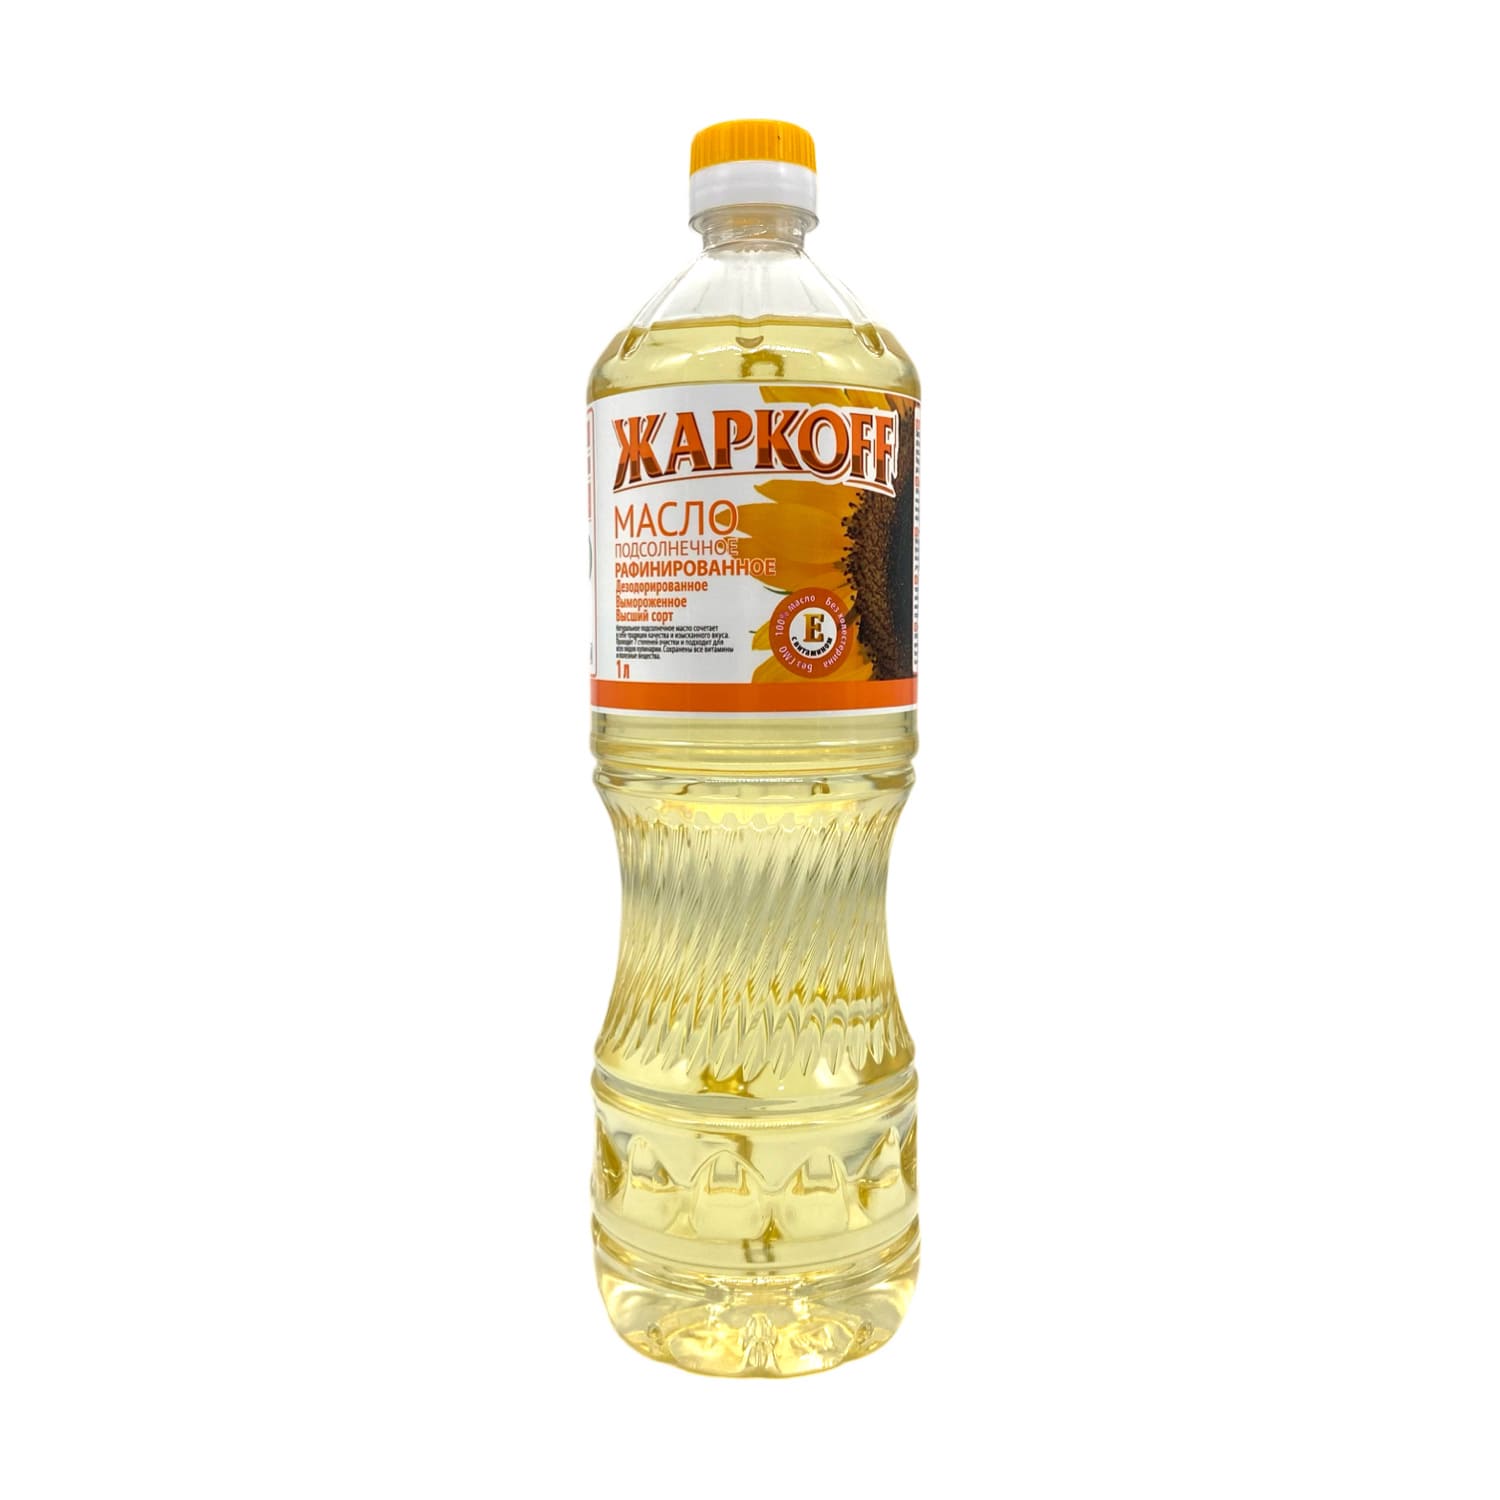 ЖаркоFF масло подсолнечное рафинированное 900 мл